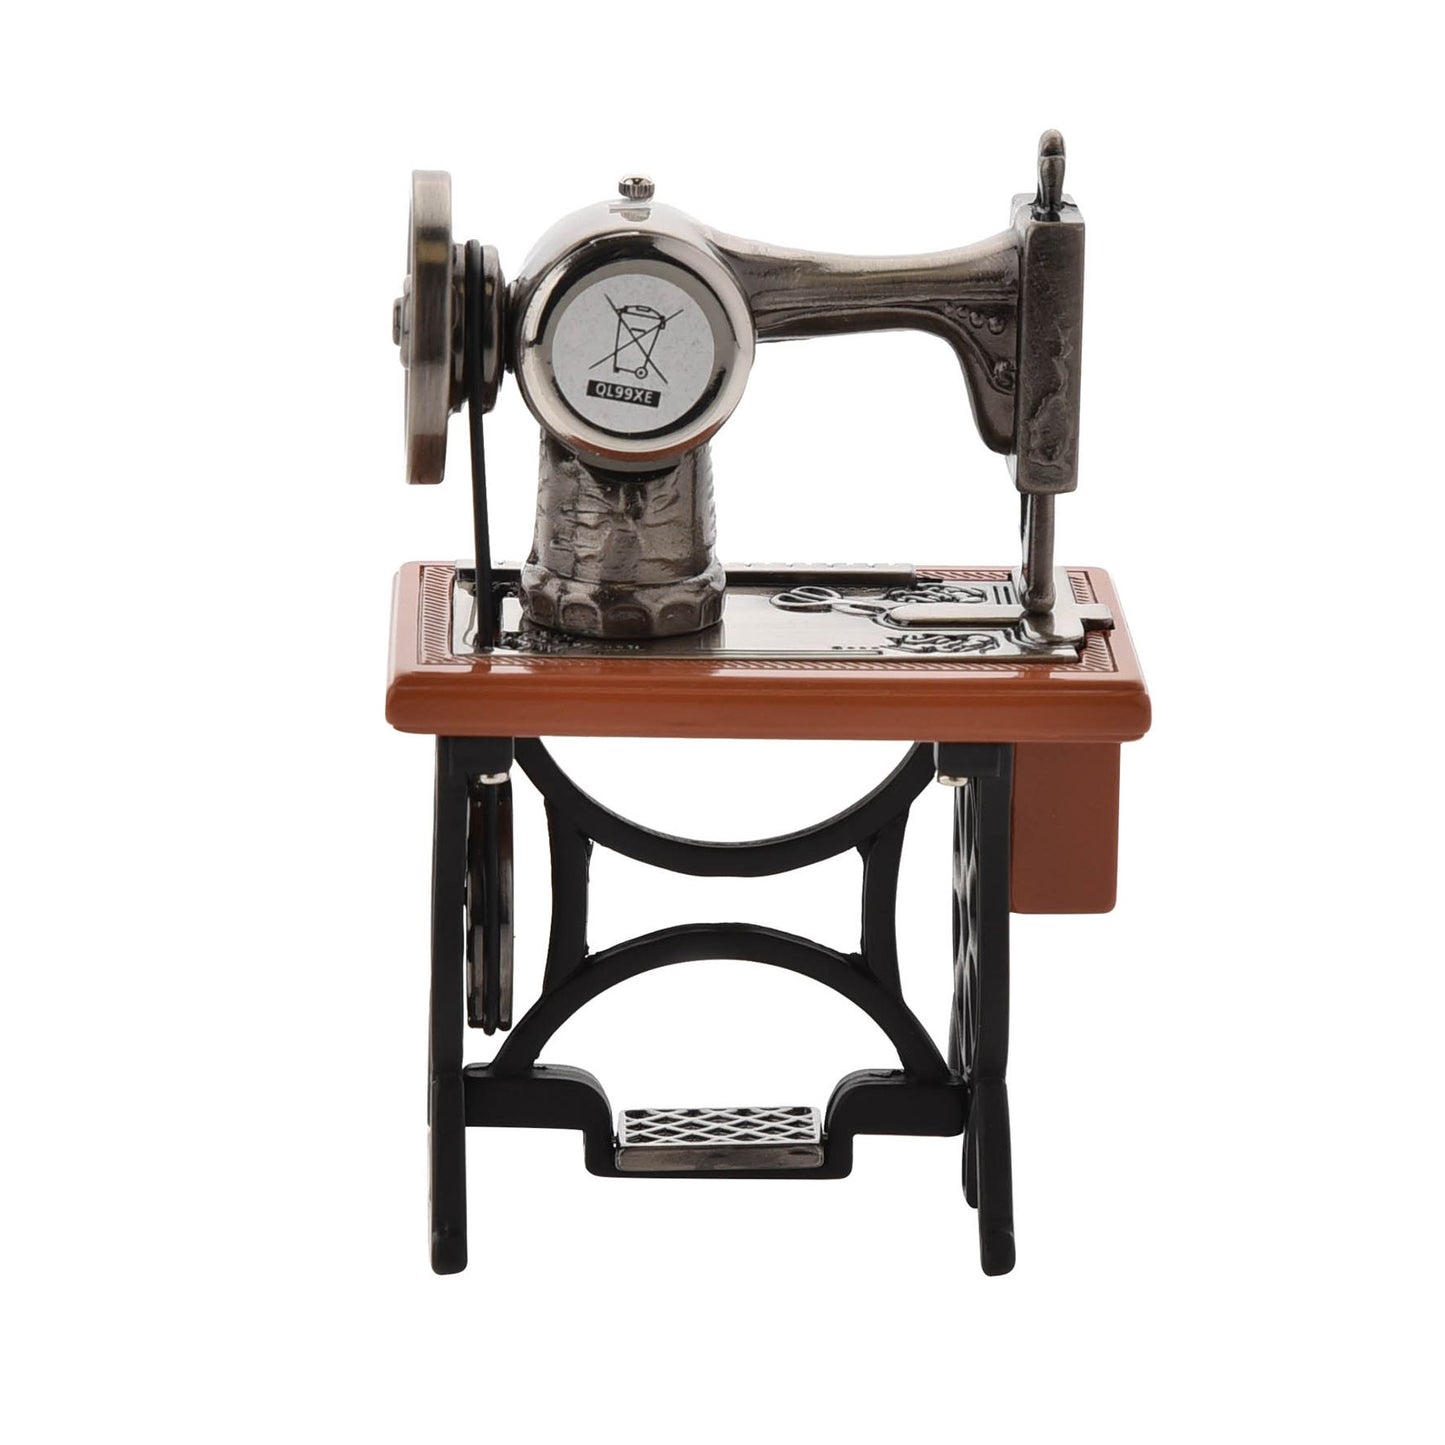 William Widdop Metal Miniature Clock - Sewing Machine